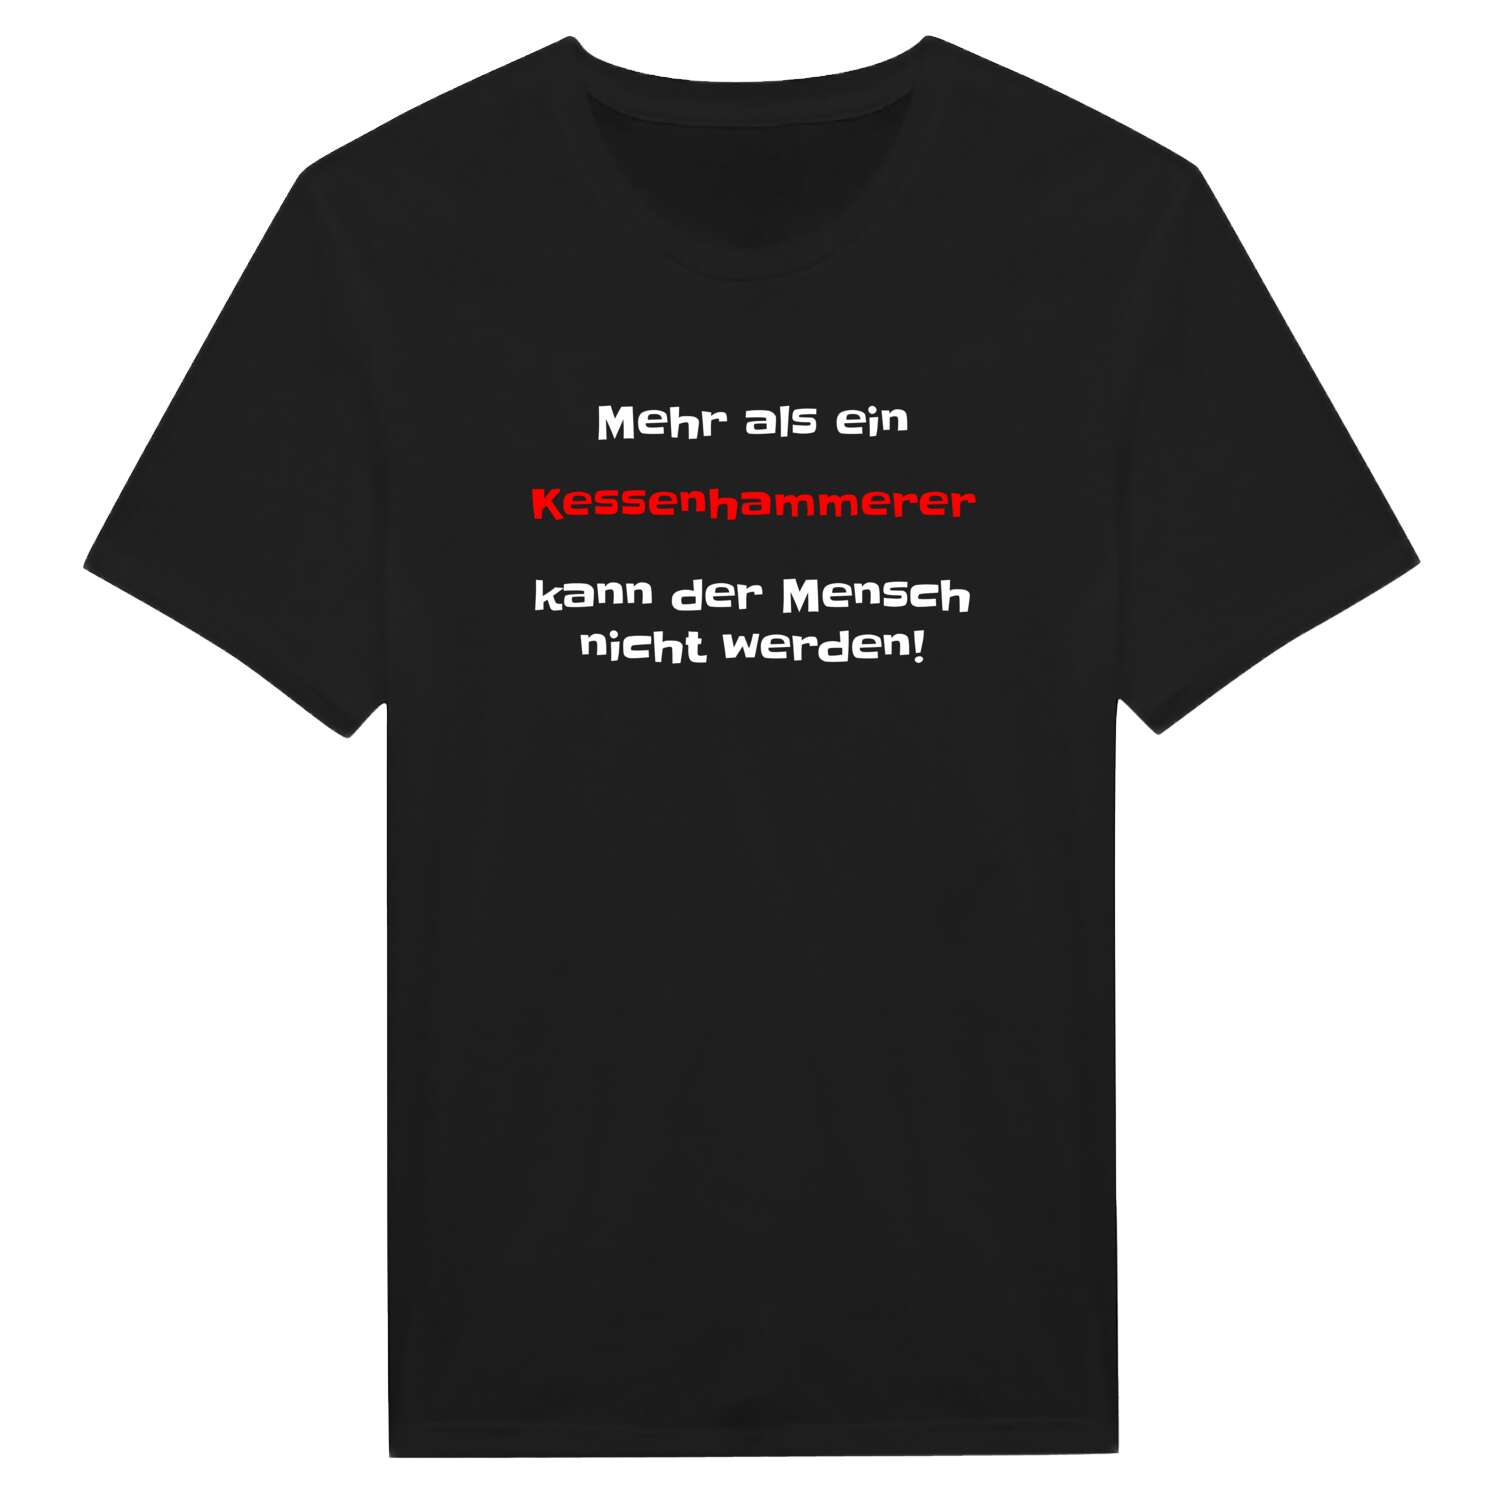 Kessenhammer T-Shirt »Mehr als ein«